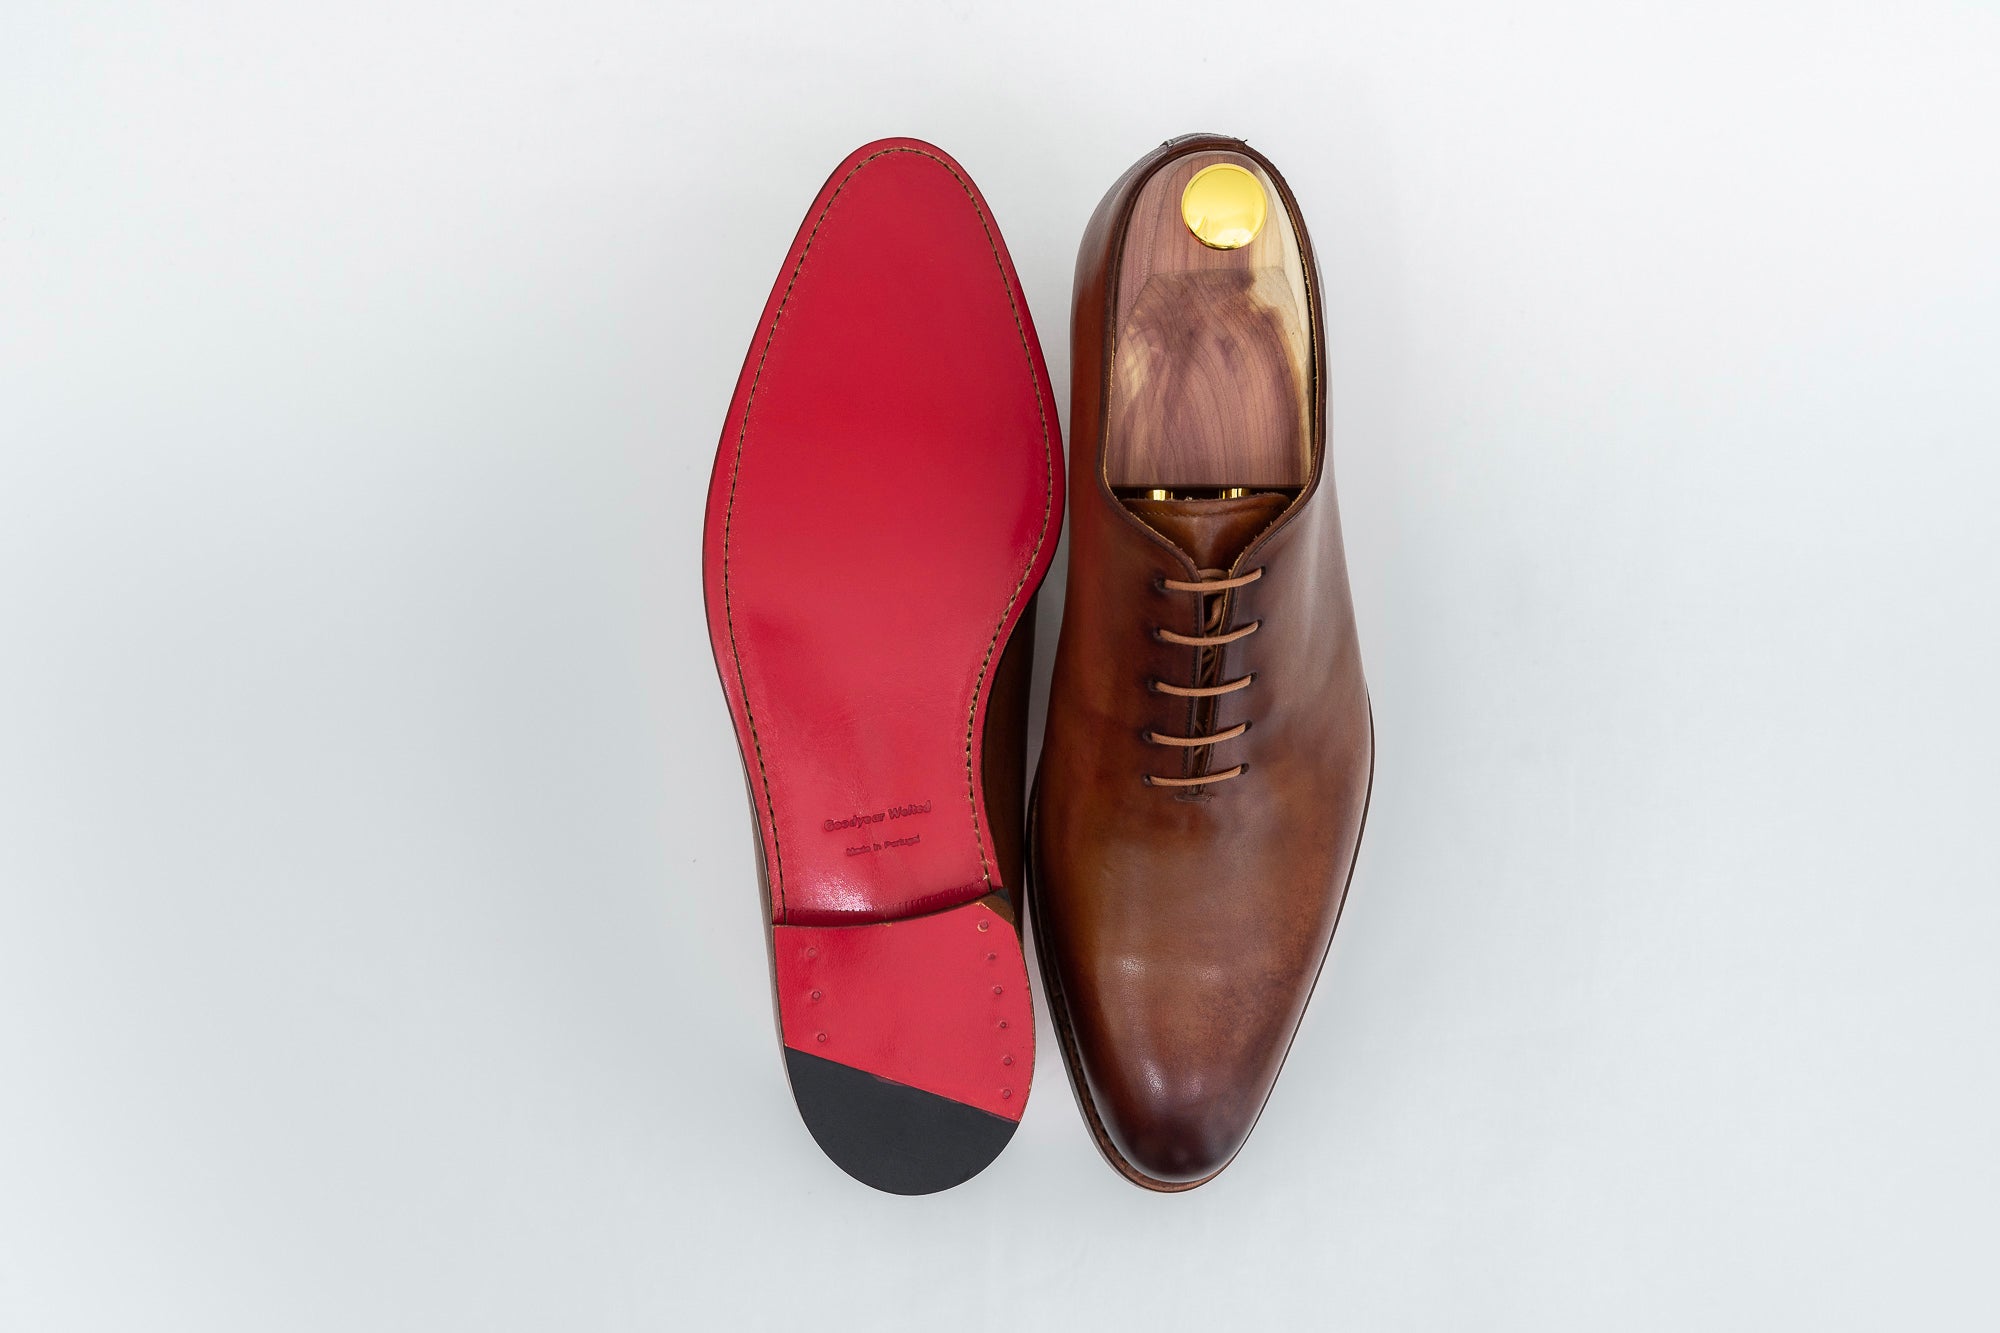 Chaussures à double boucle en cuir pour homme – Ypsons